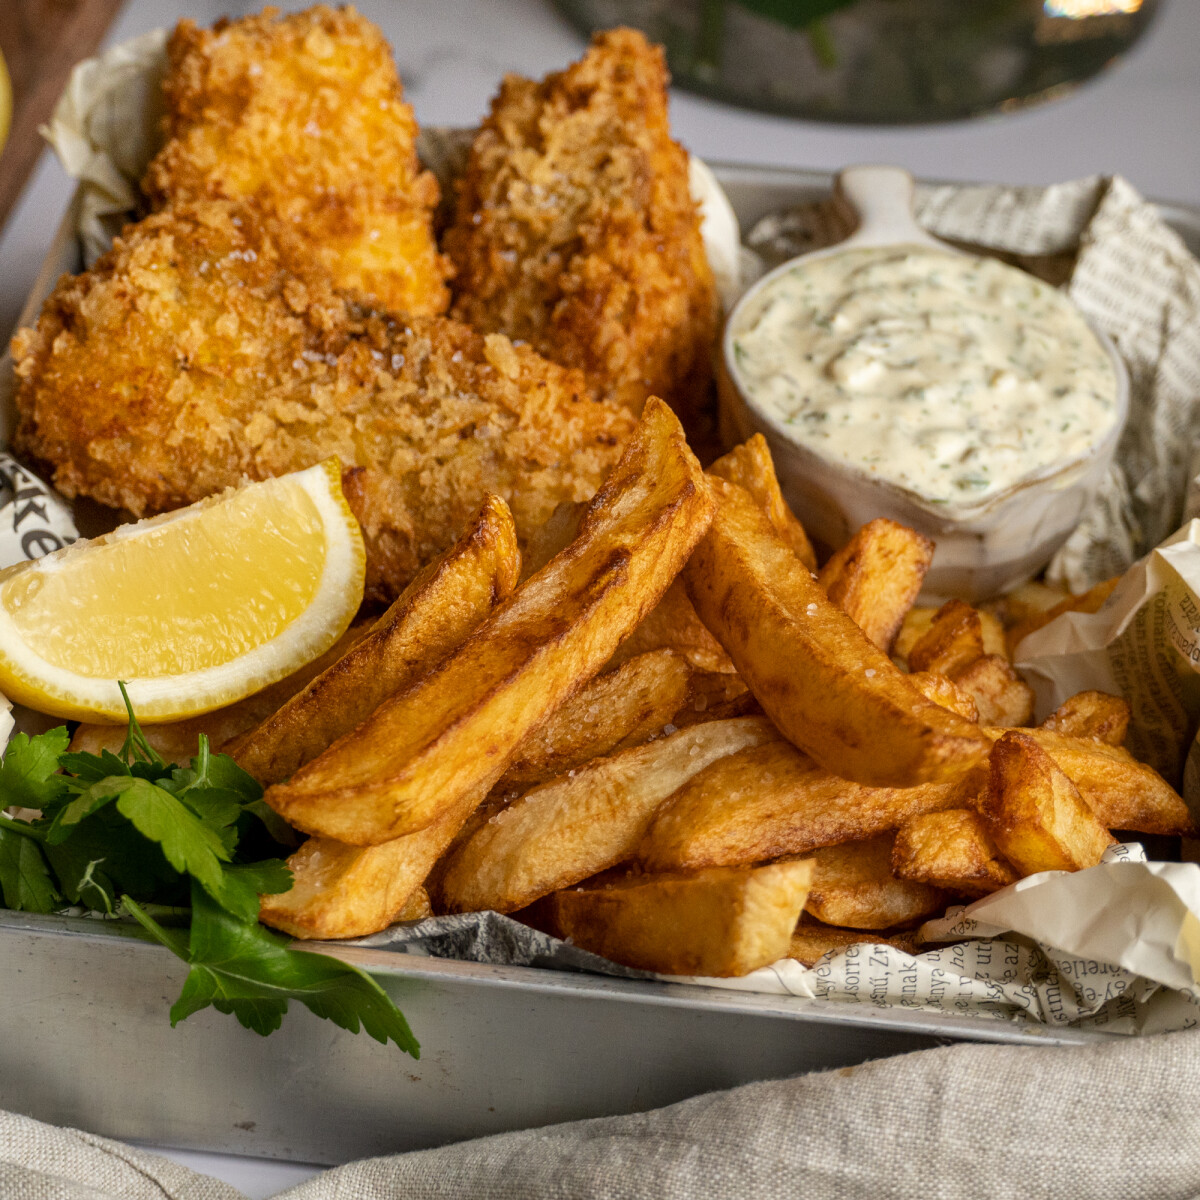 Így lesz extrán ropogós az egyik kedvenc gyorskajánk: a fish and chips